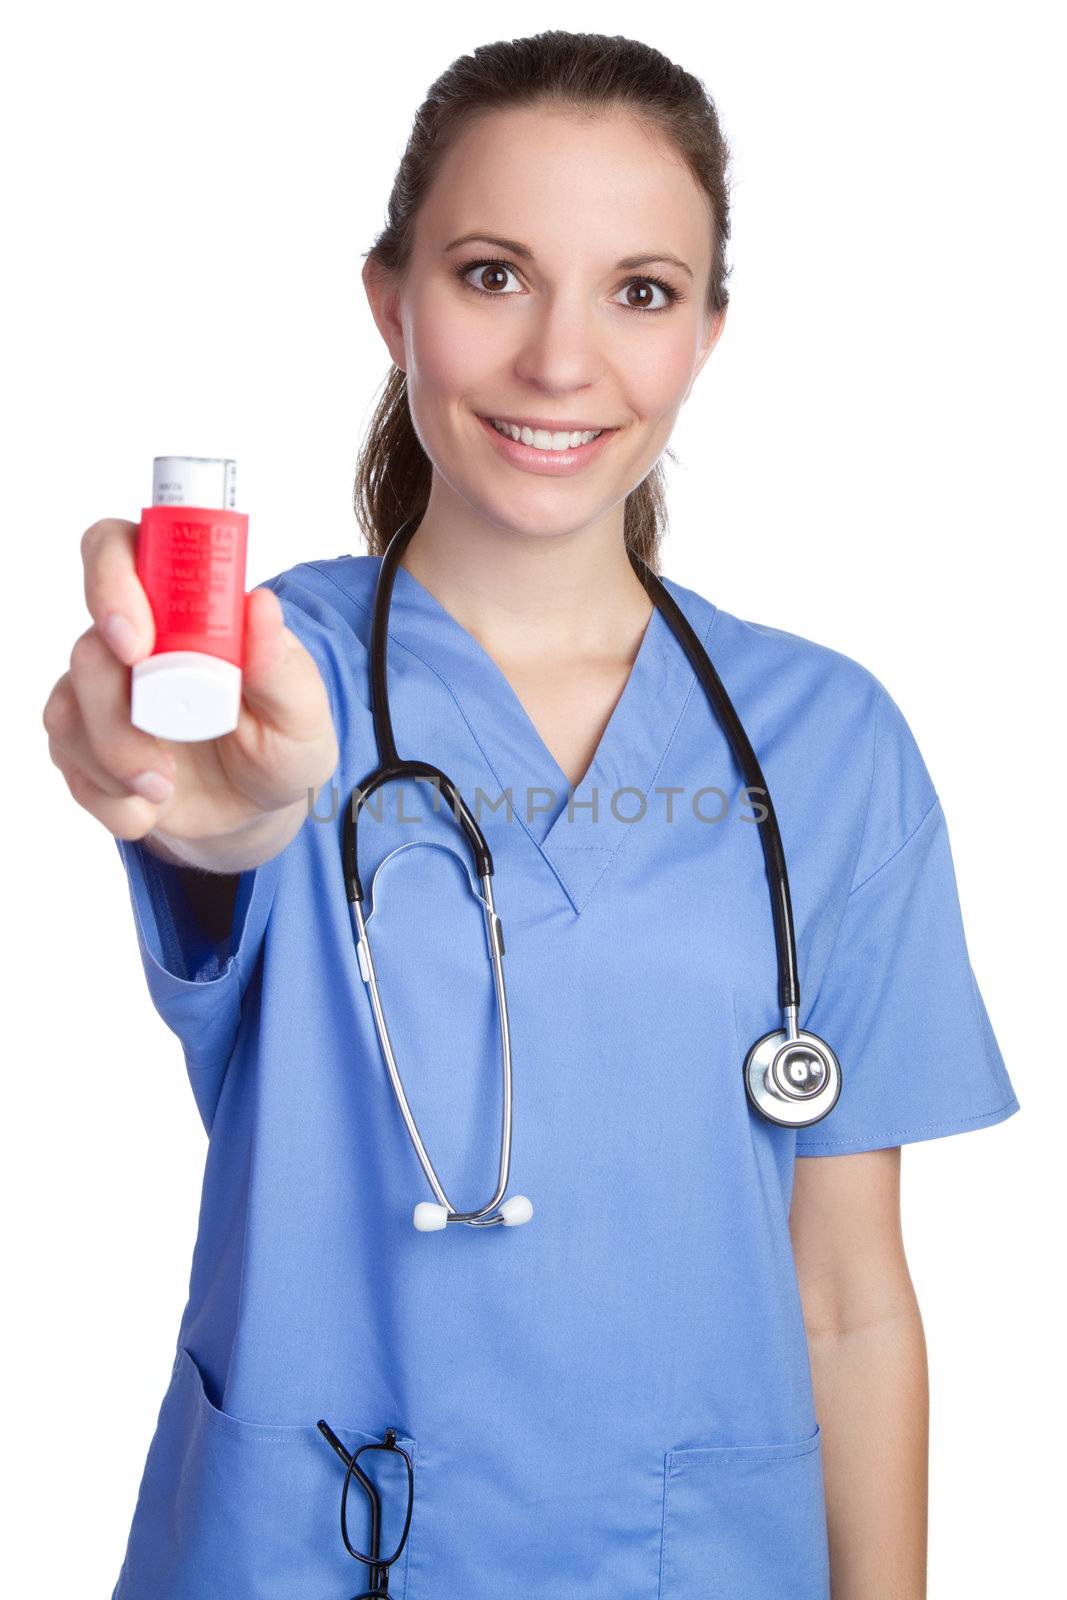 Nurse Holding Inhaler by keeweeboy